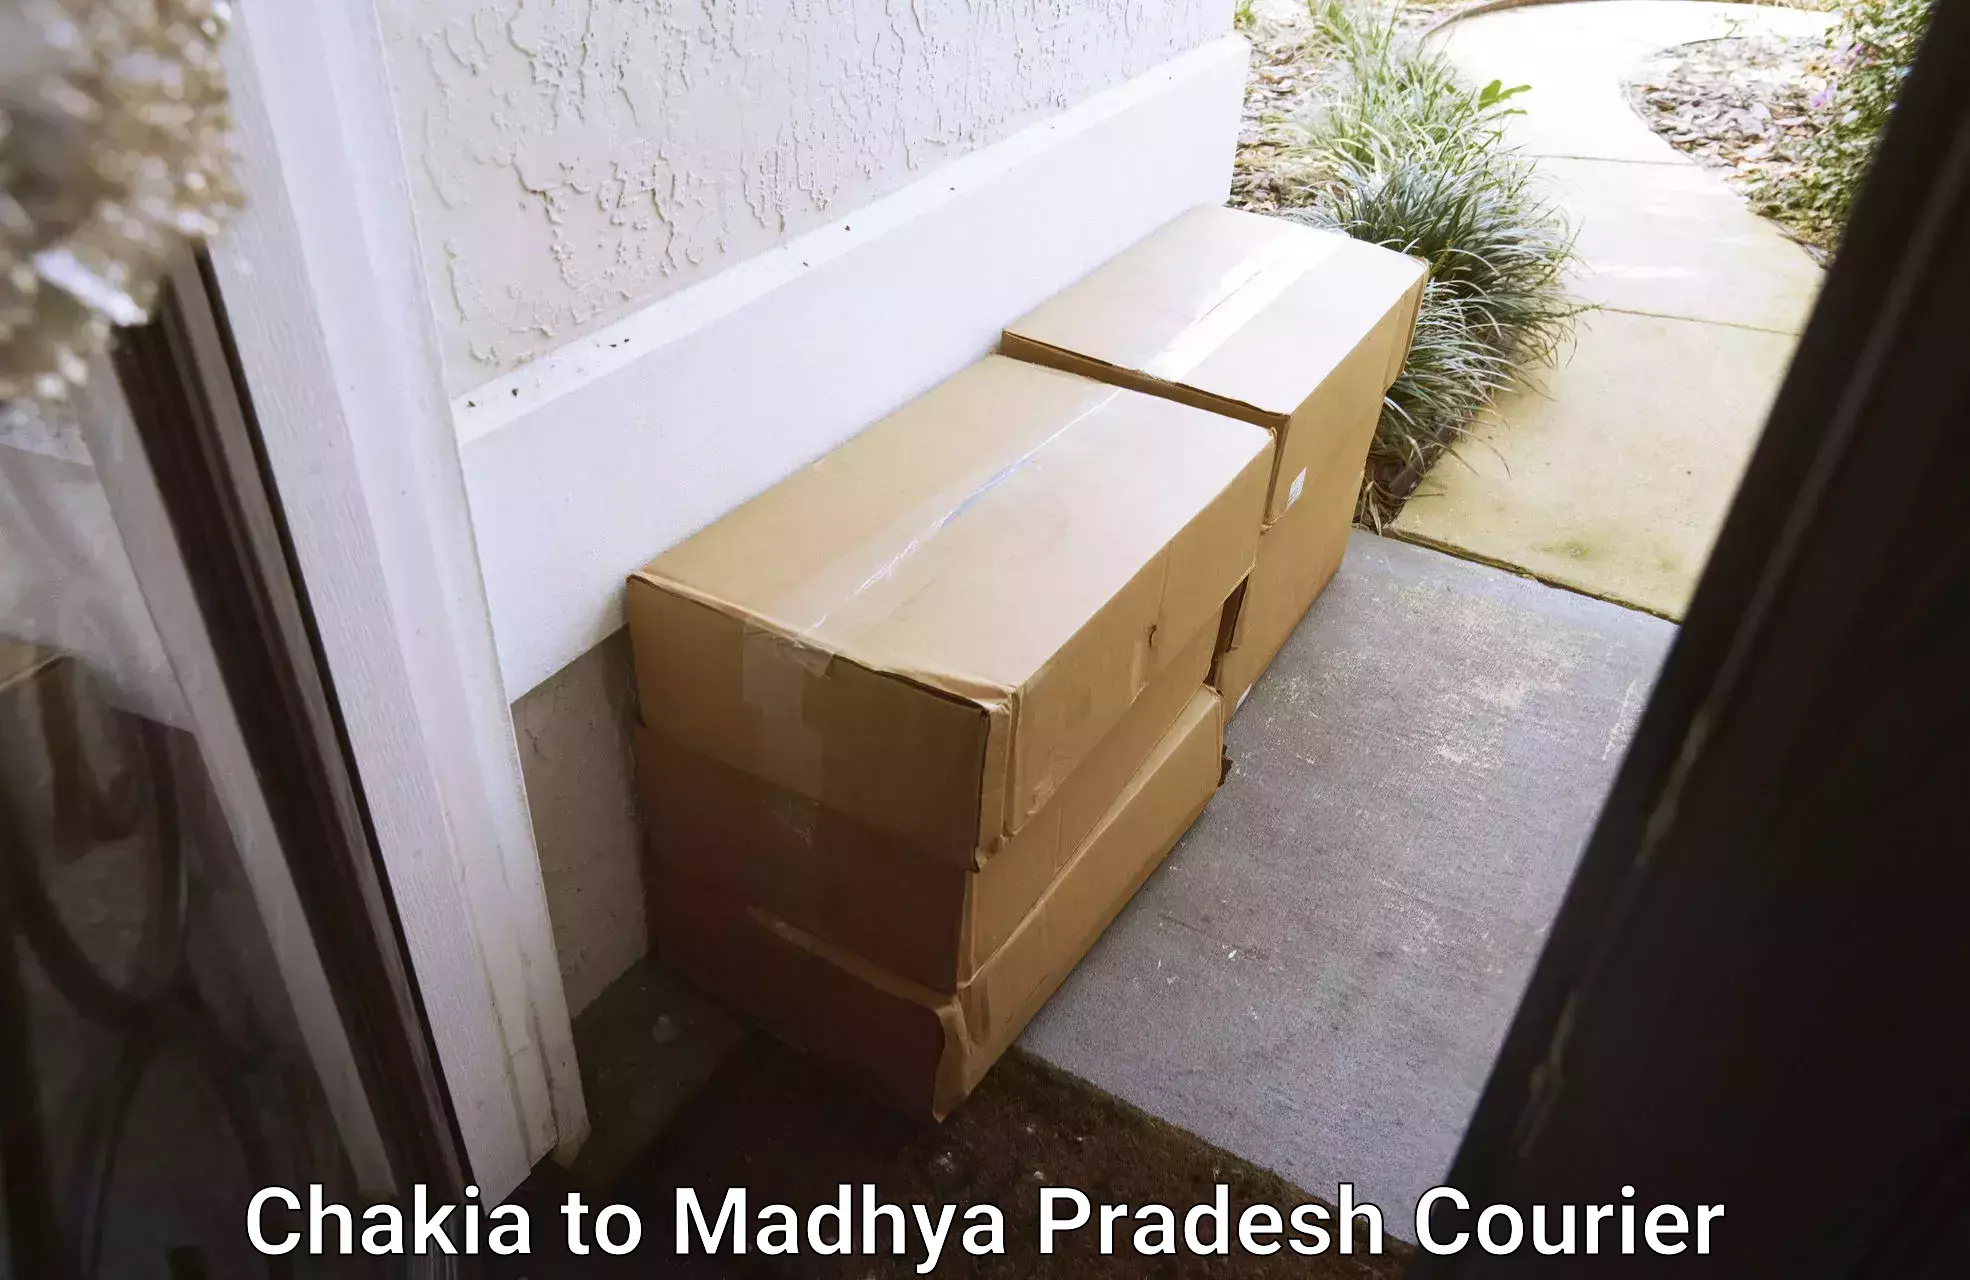 Efficient moving company Chakia to Madhya Pradesh